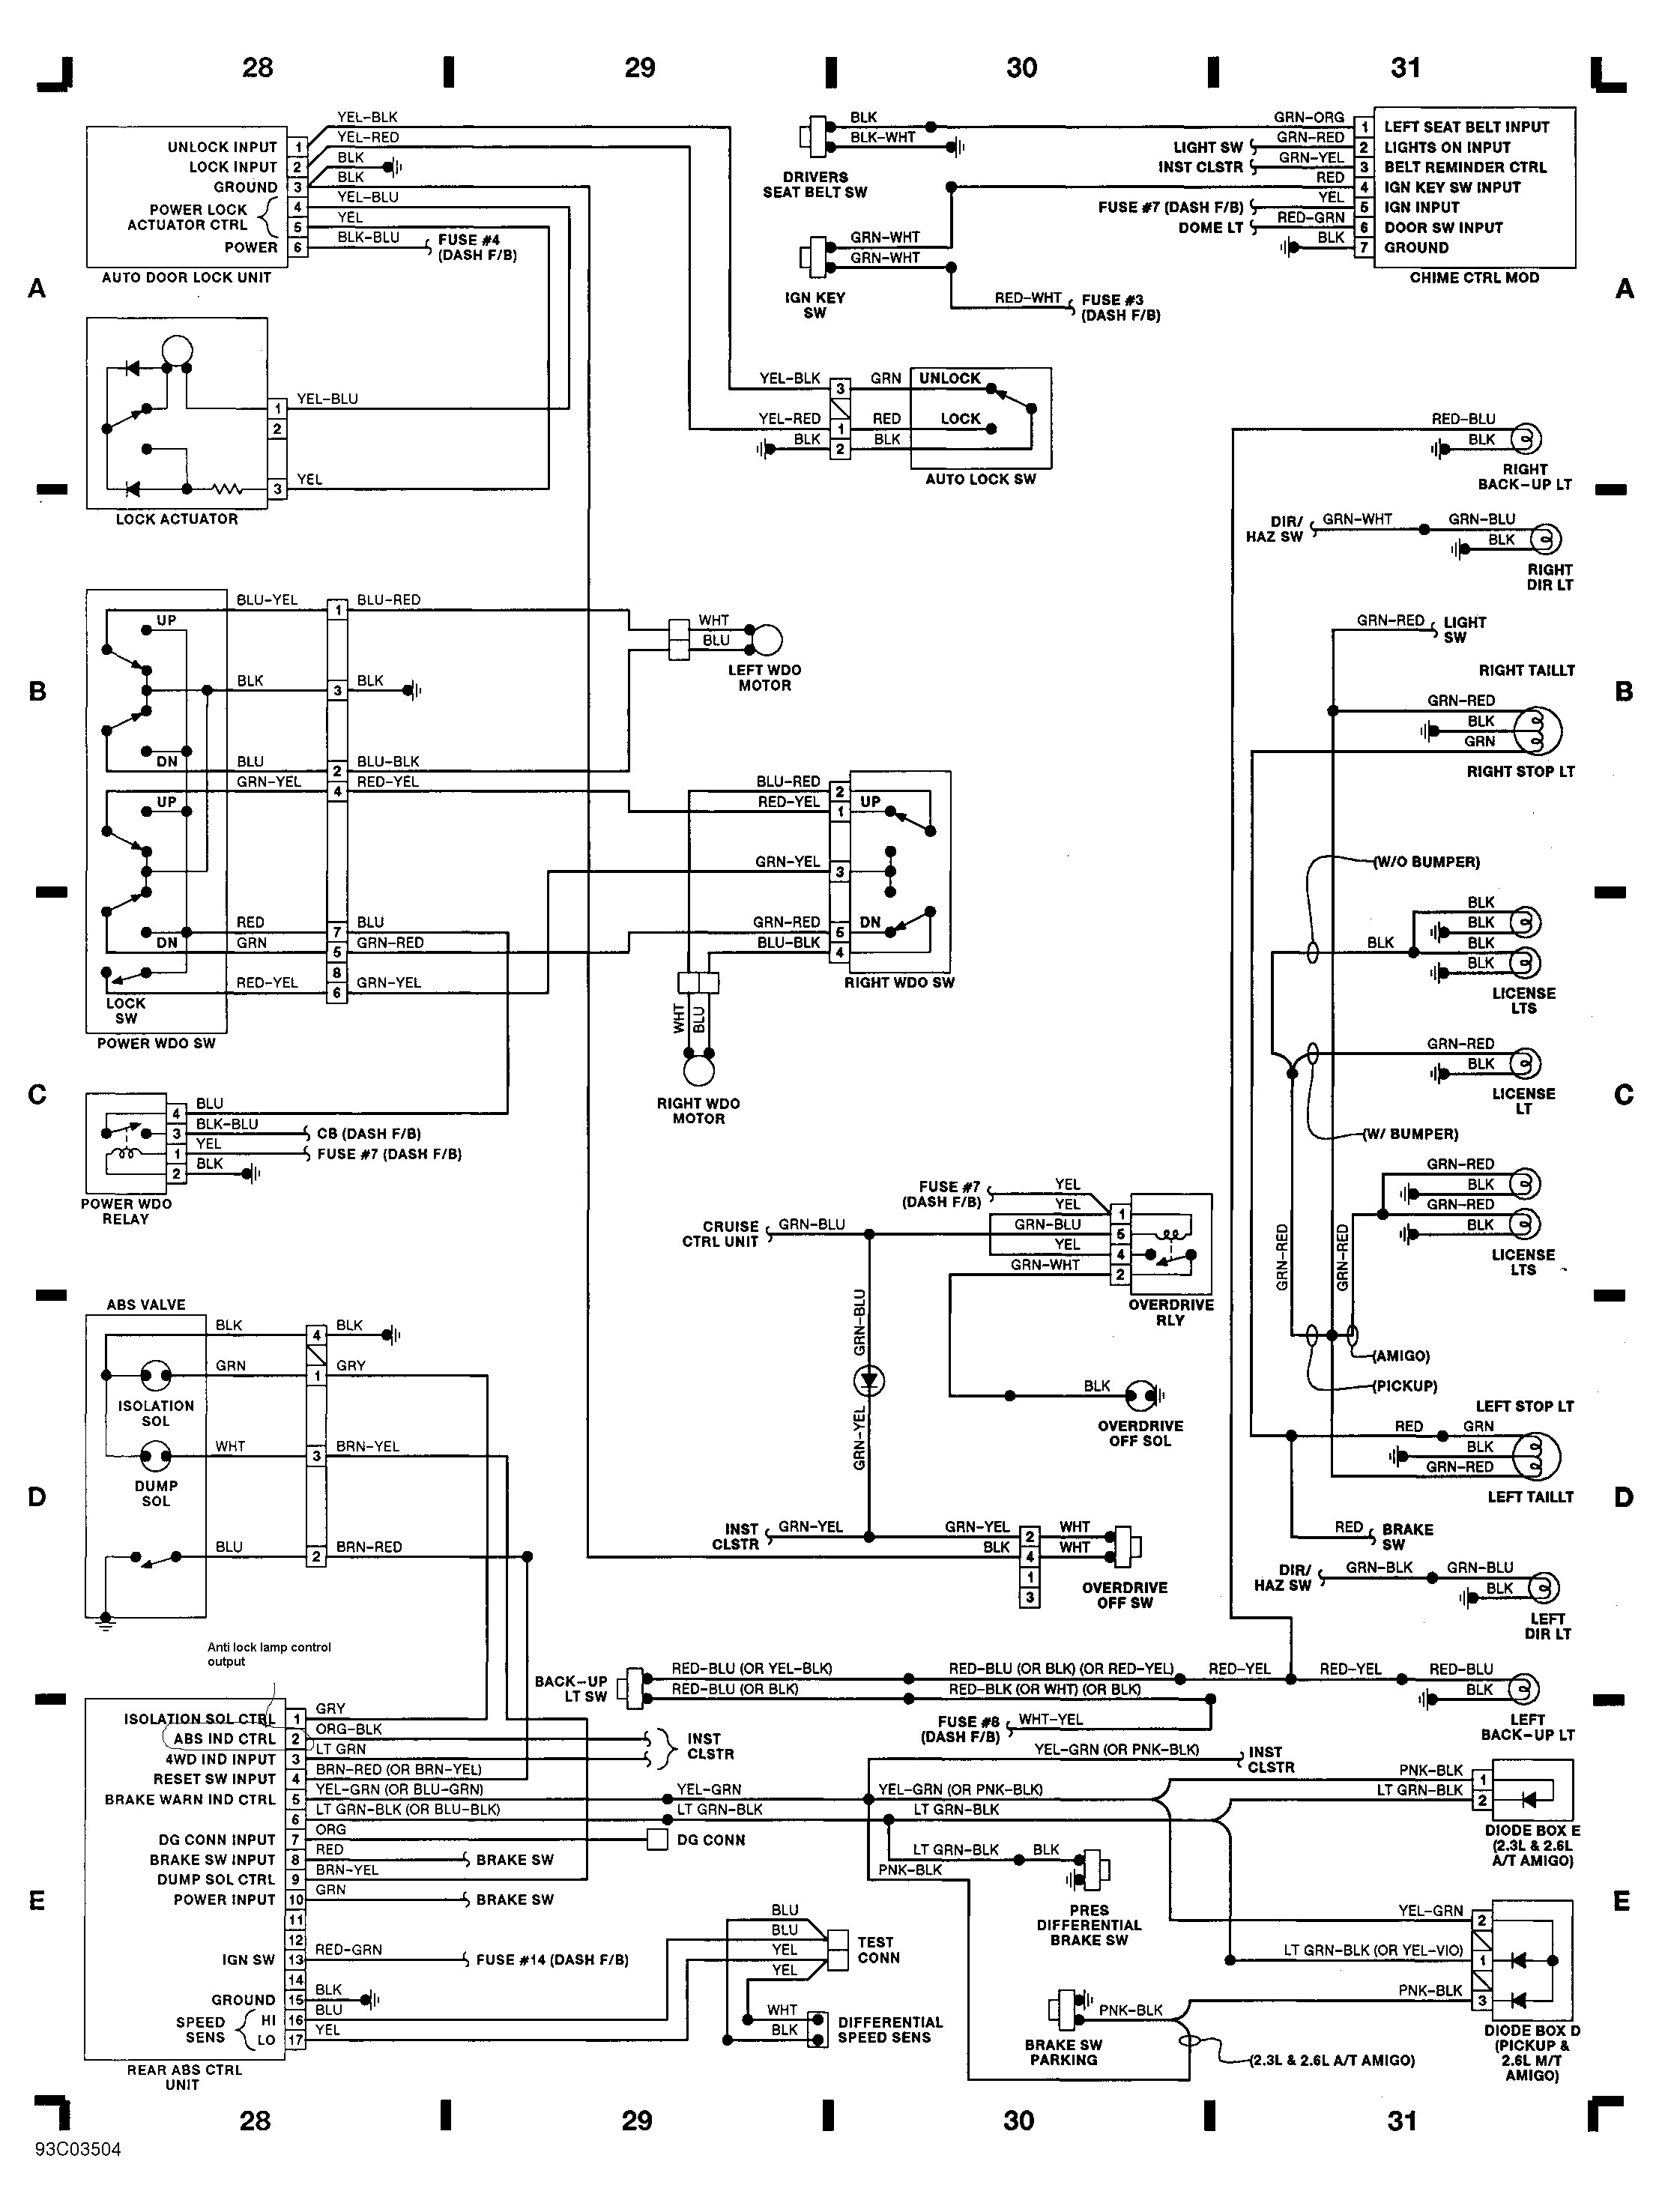 94 isuzu Rodeo Engine Diagram isuzu Engine Schematic Wiring Diagram Inside Of 94 isuzu Rodeo Engine Diagram